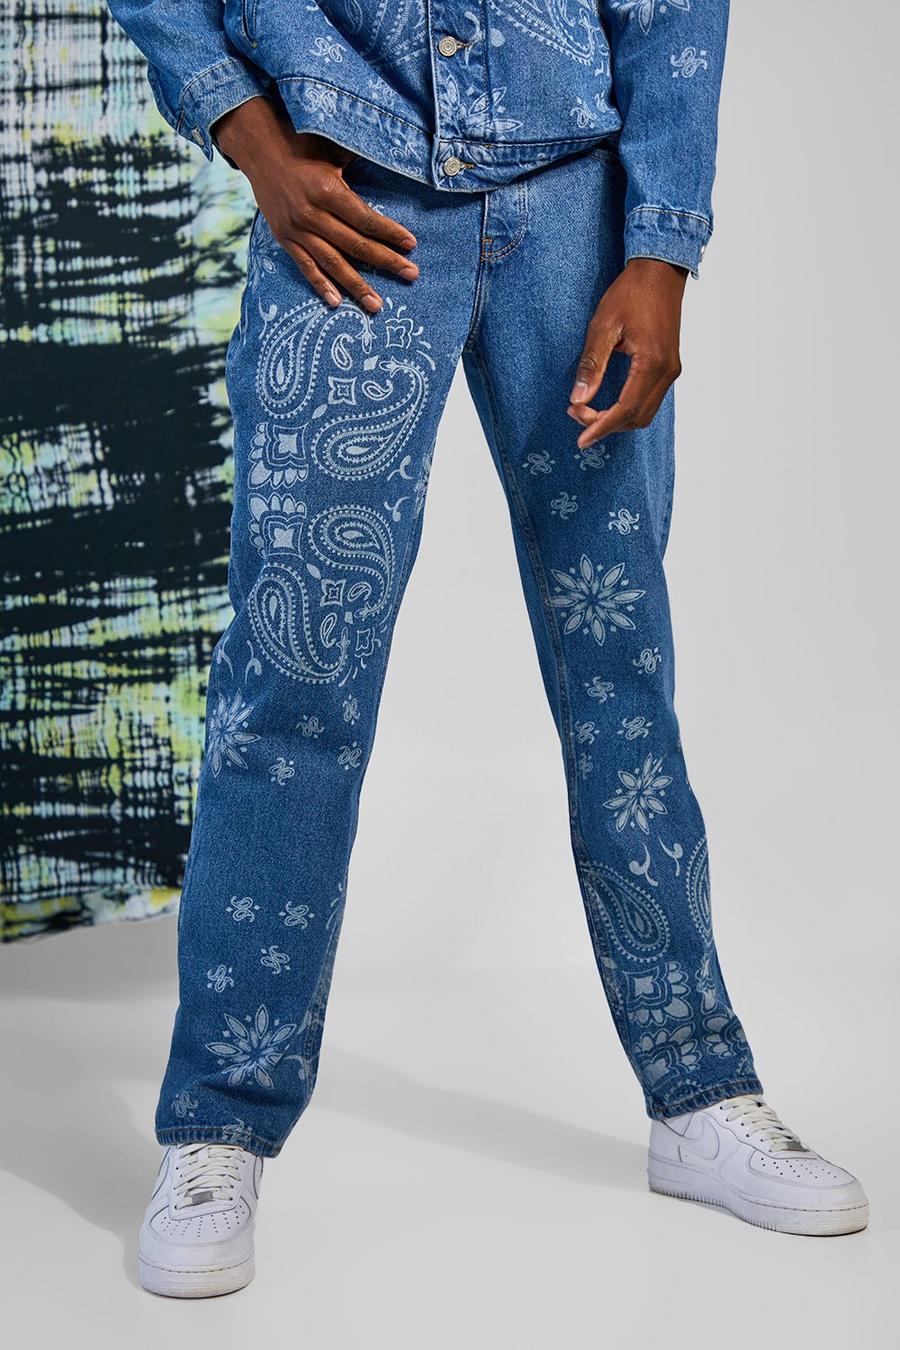 כחול בהיר blue ג'ינס בגזרה משוחררת עם הדפס פייזלי